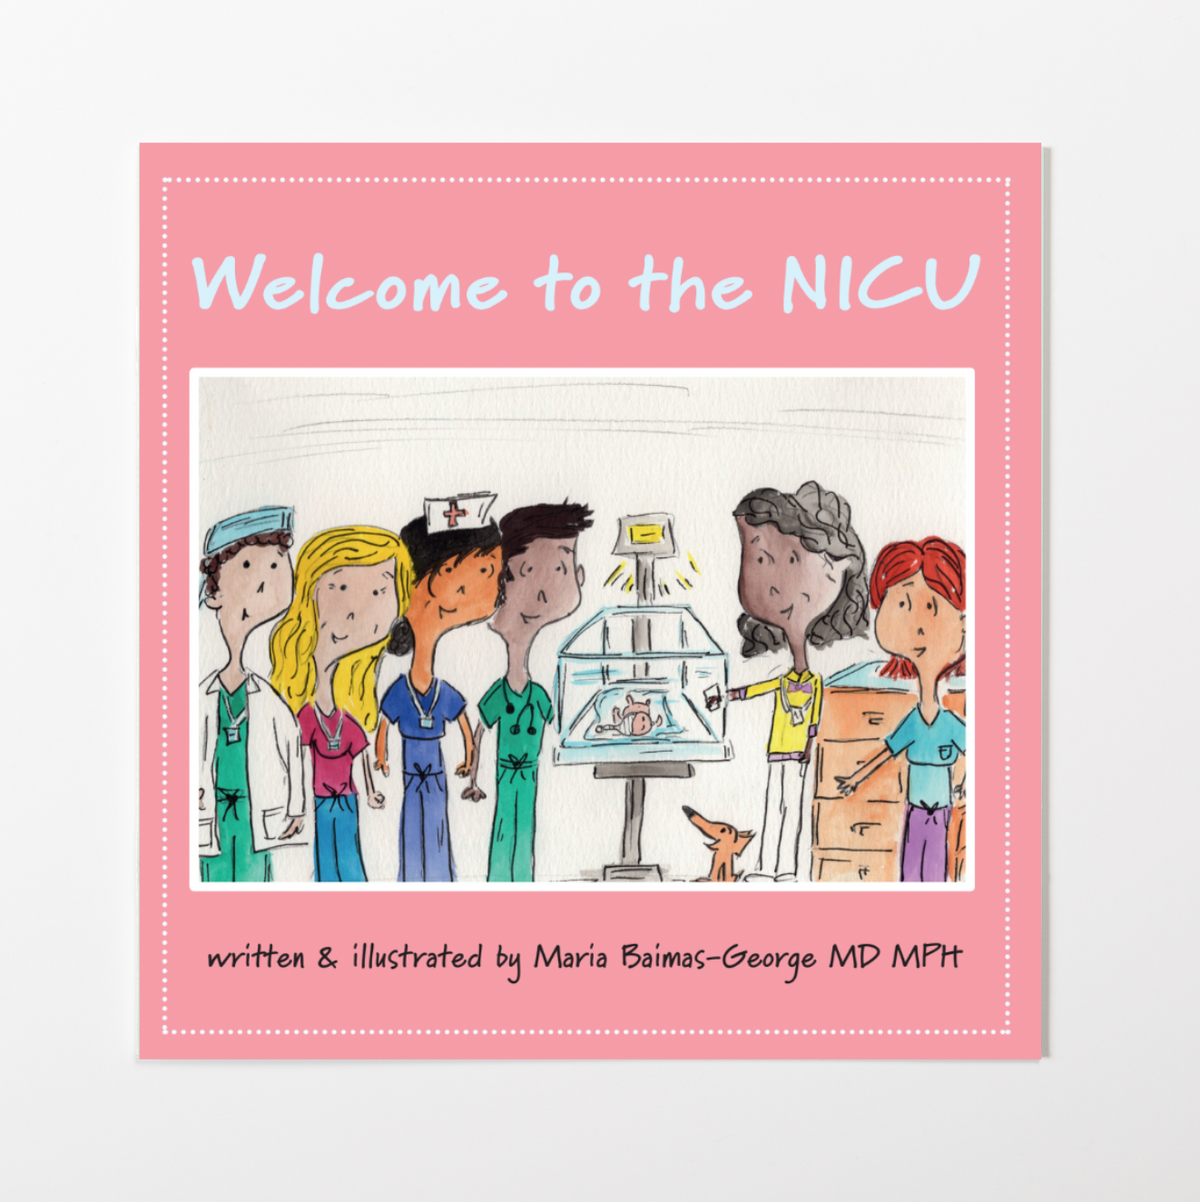 Welcome to the NICU